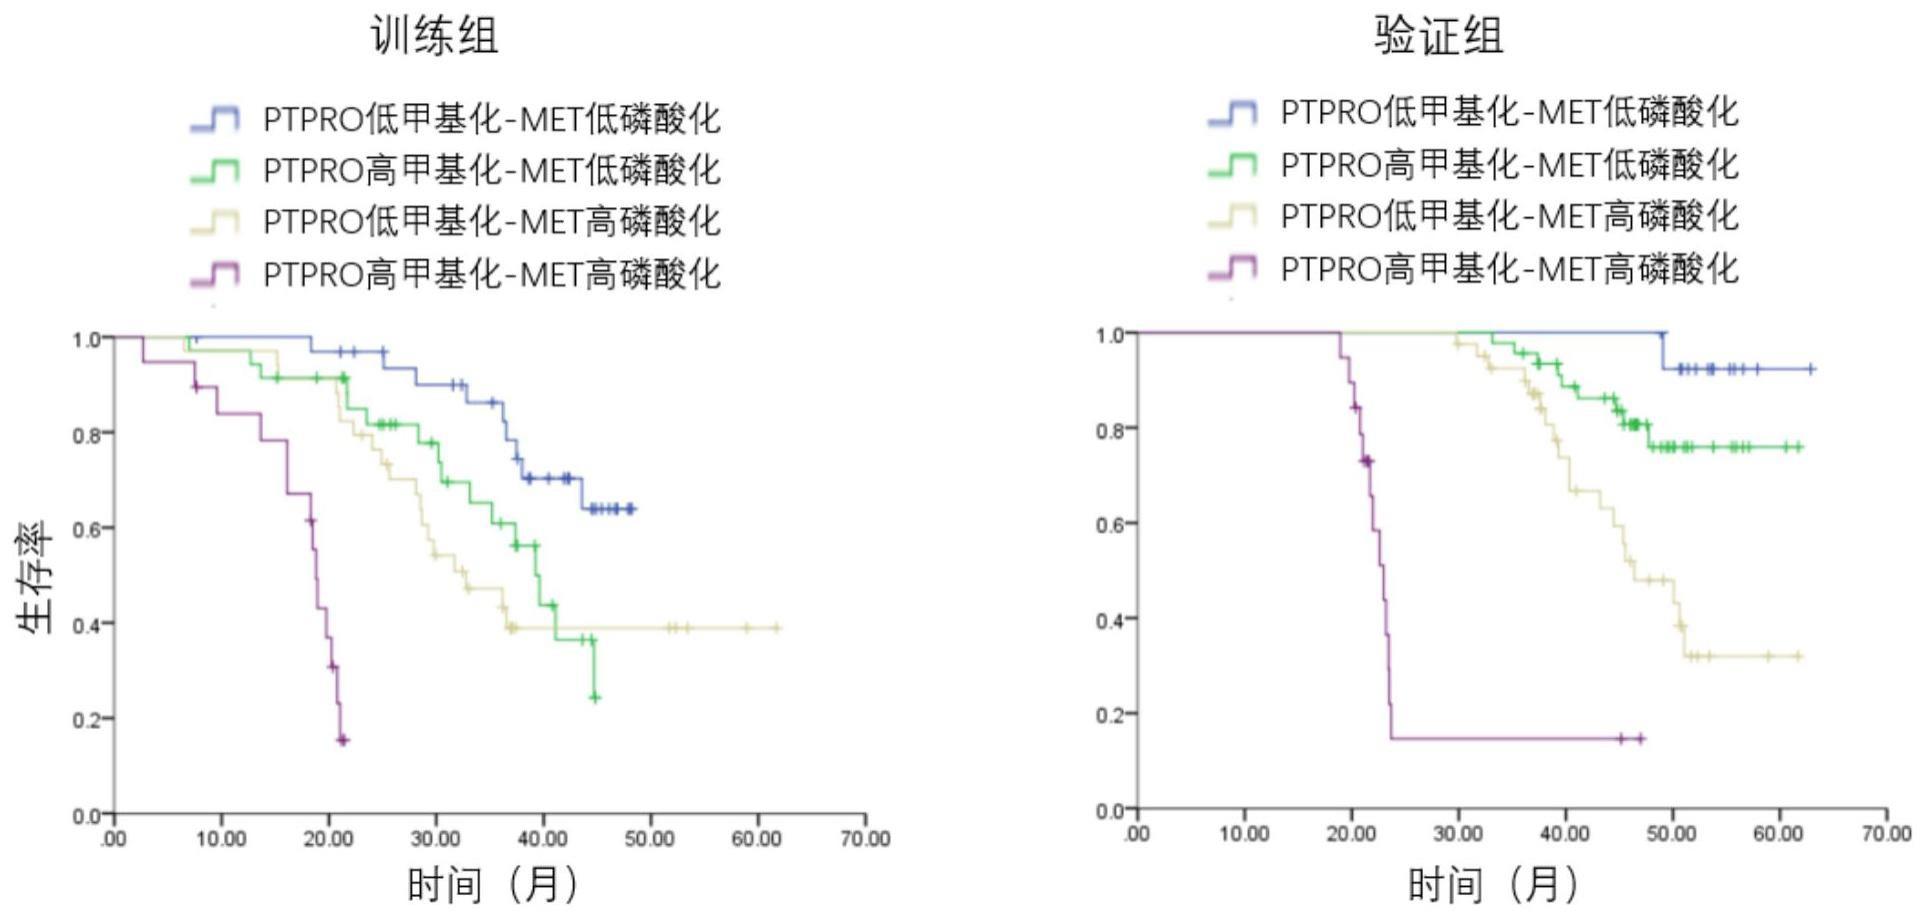 磷酸化MET和甲基化PTPRO作为生物标志物的应用